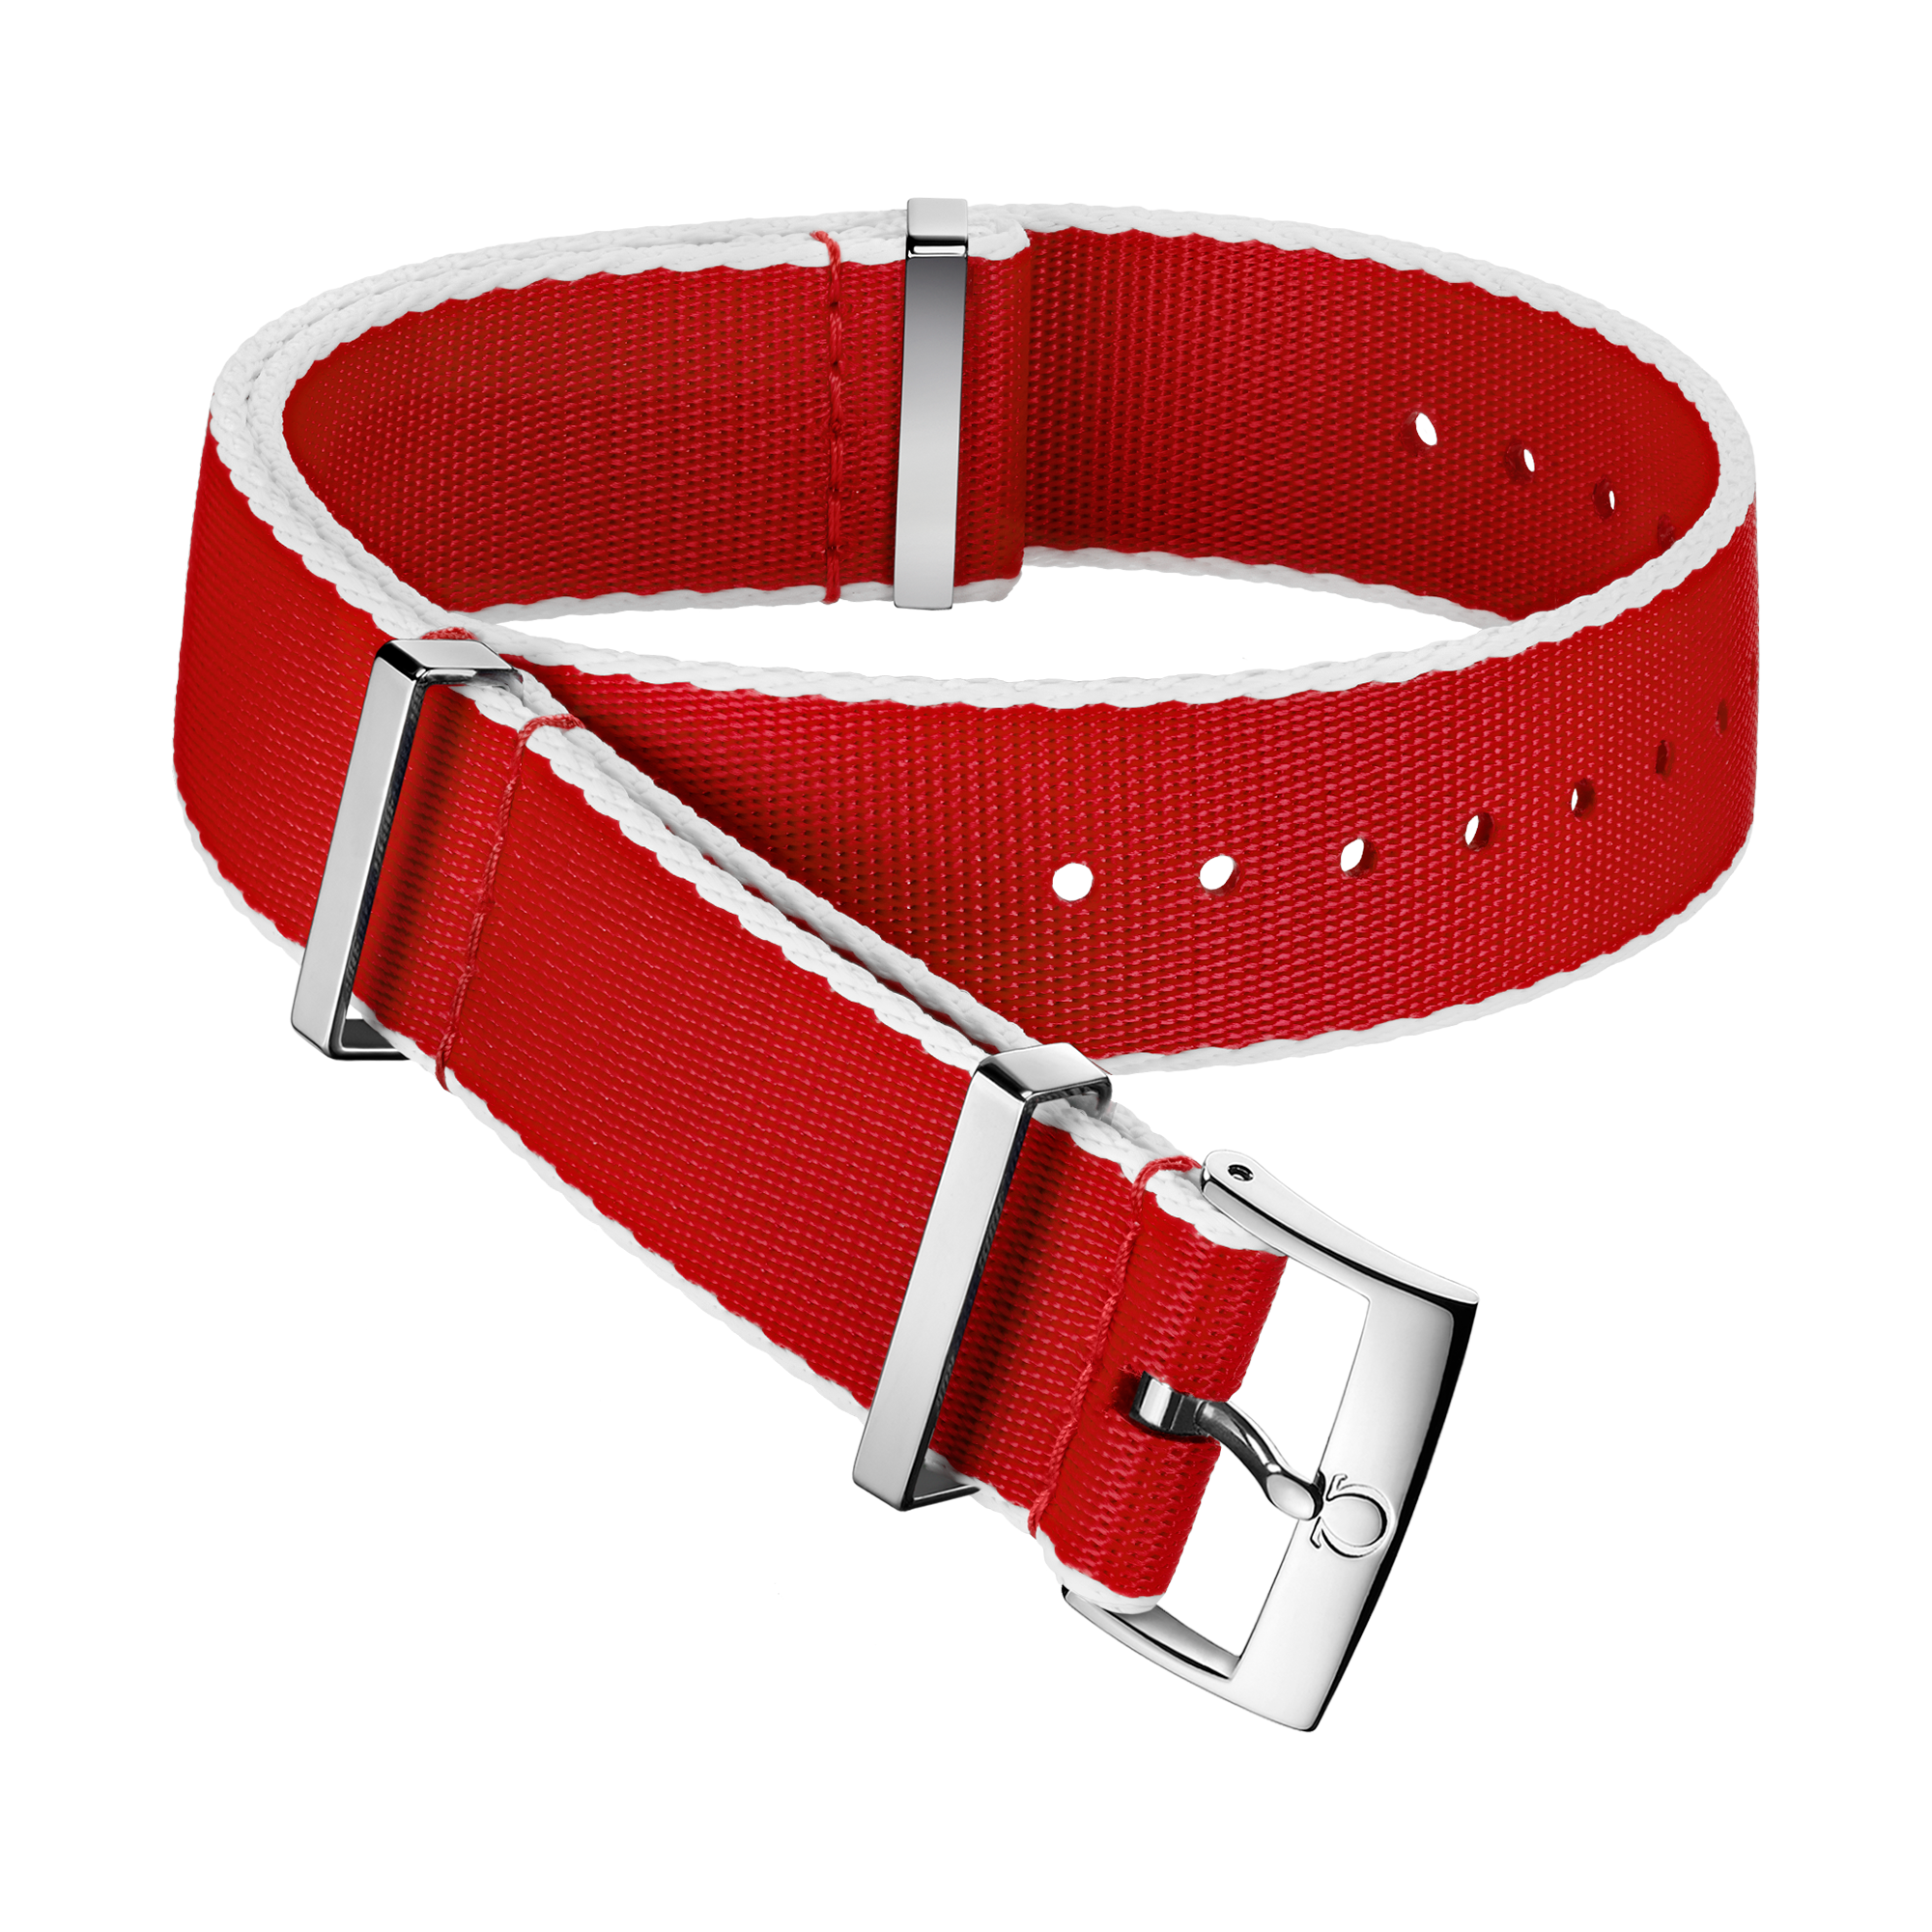 Bracelet NATO - Bracelet en polyamide rouge aux bordures blanches - 031CWZ010718